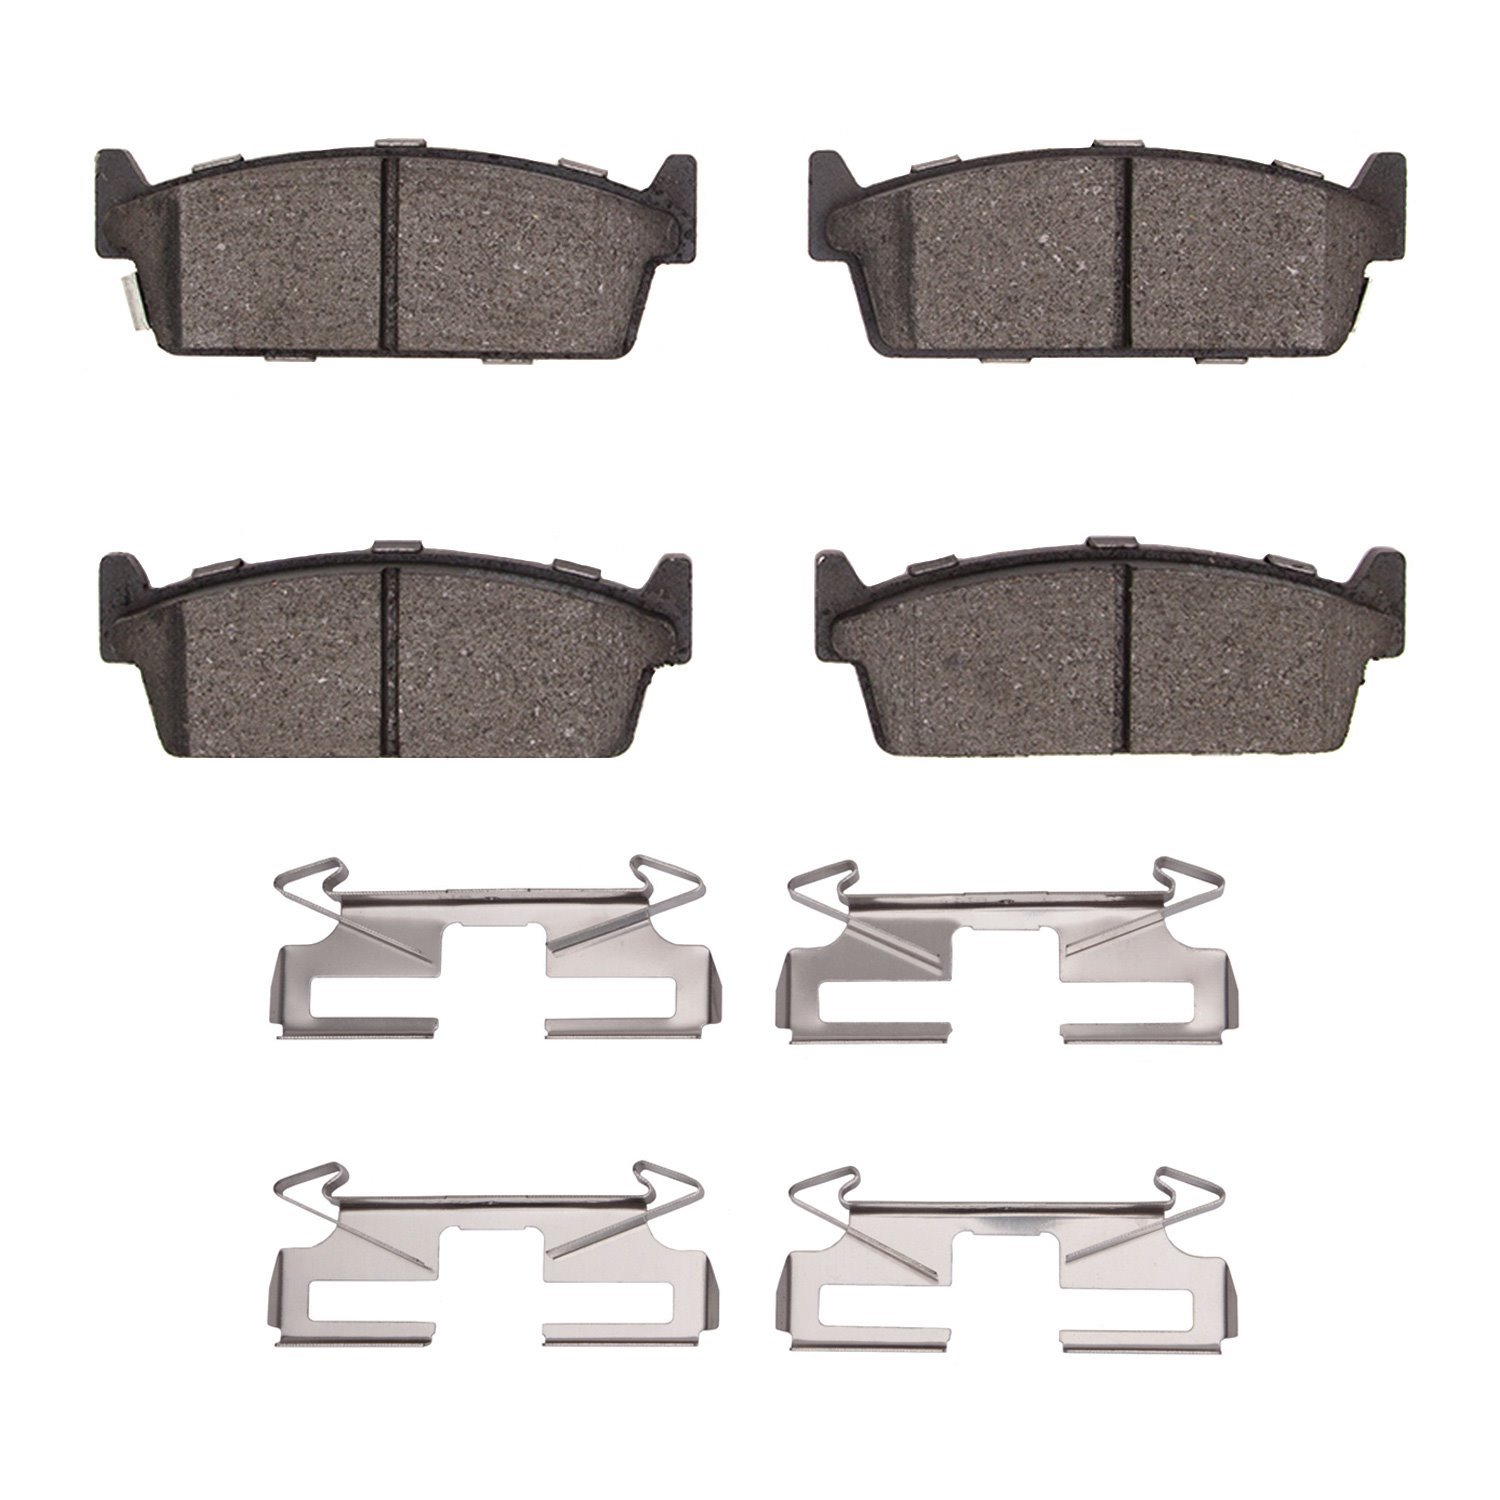 1310-0479-01 3000-Series Ceramic Brake Pads & Hardware Kit, 1990-1992 Infiniti/Nissan, Position: Rear